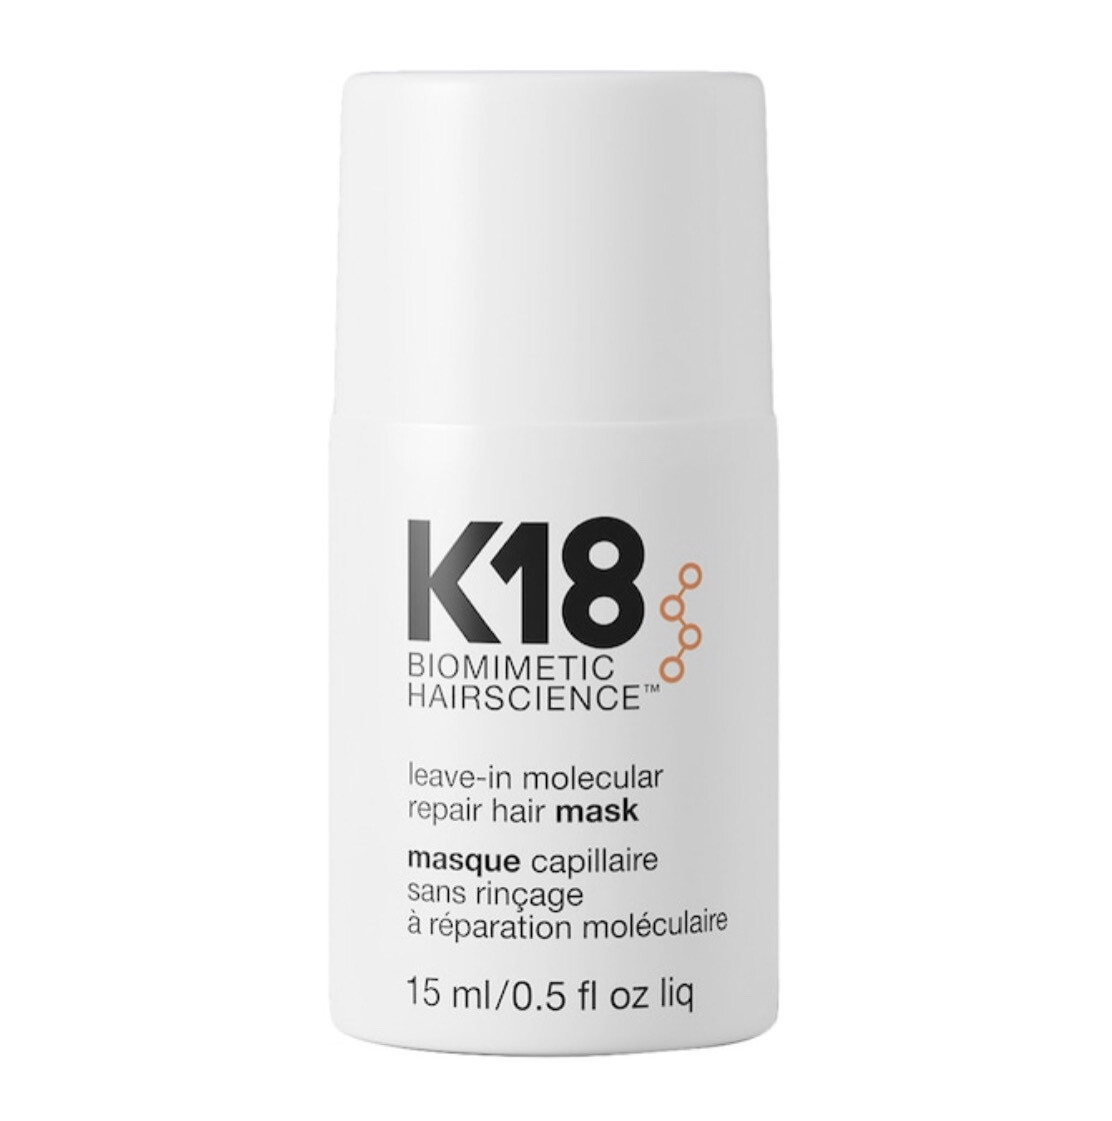 K18 Biomimetic Hairscience - Mini Leave-In Molecular Repair Hair Mask | 15 mL